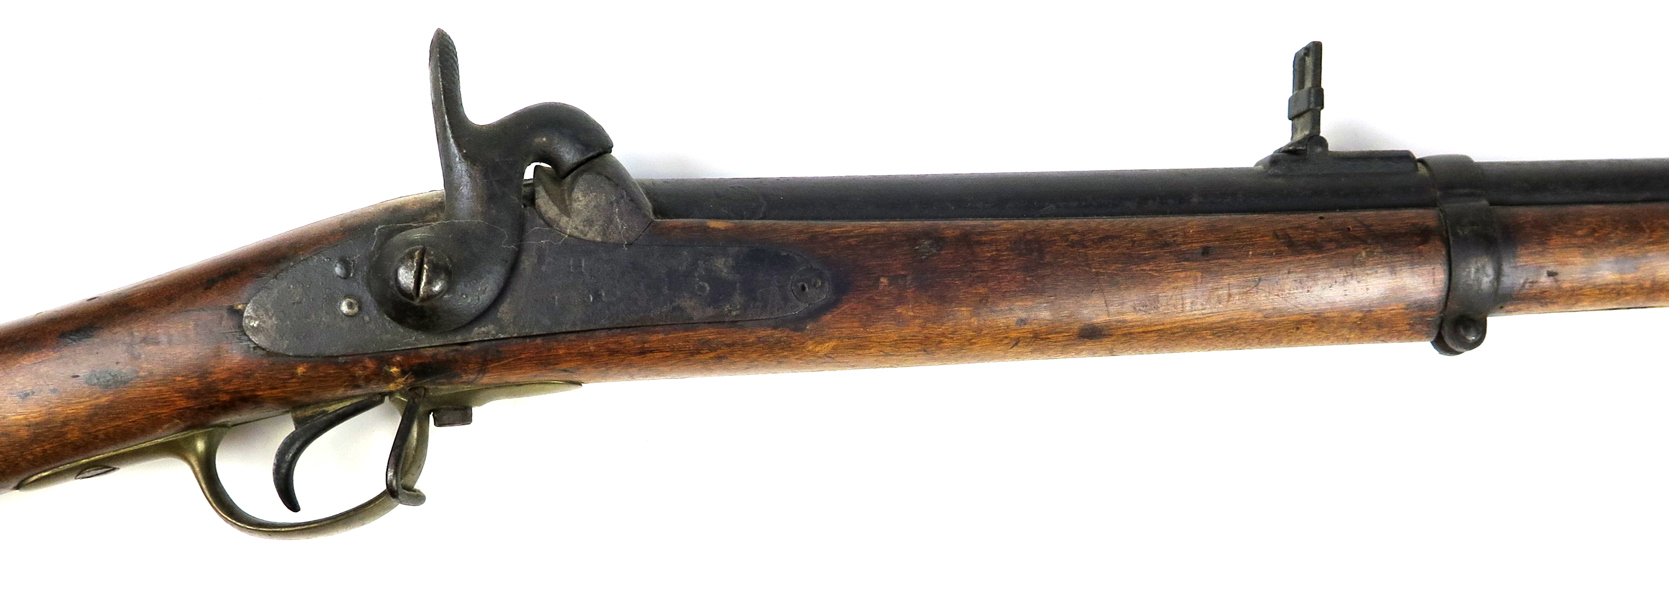 Slaglåsgevär, M/1860 (Wredes modell), Husqvarna, nummeridentisk 11113, piplängd 95 cm, räfflad pipa, l 140 cm, senare laddstake_33616a_8dbe2c65c6dbfd8_lg.jpeg